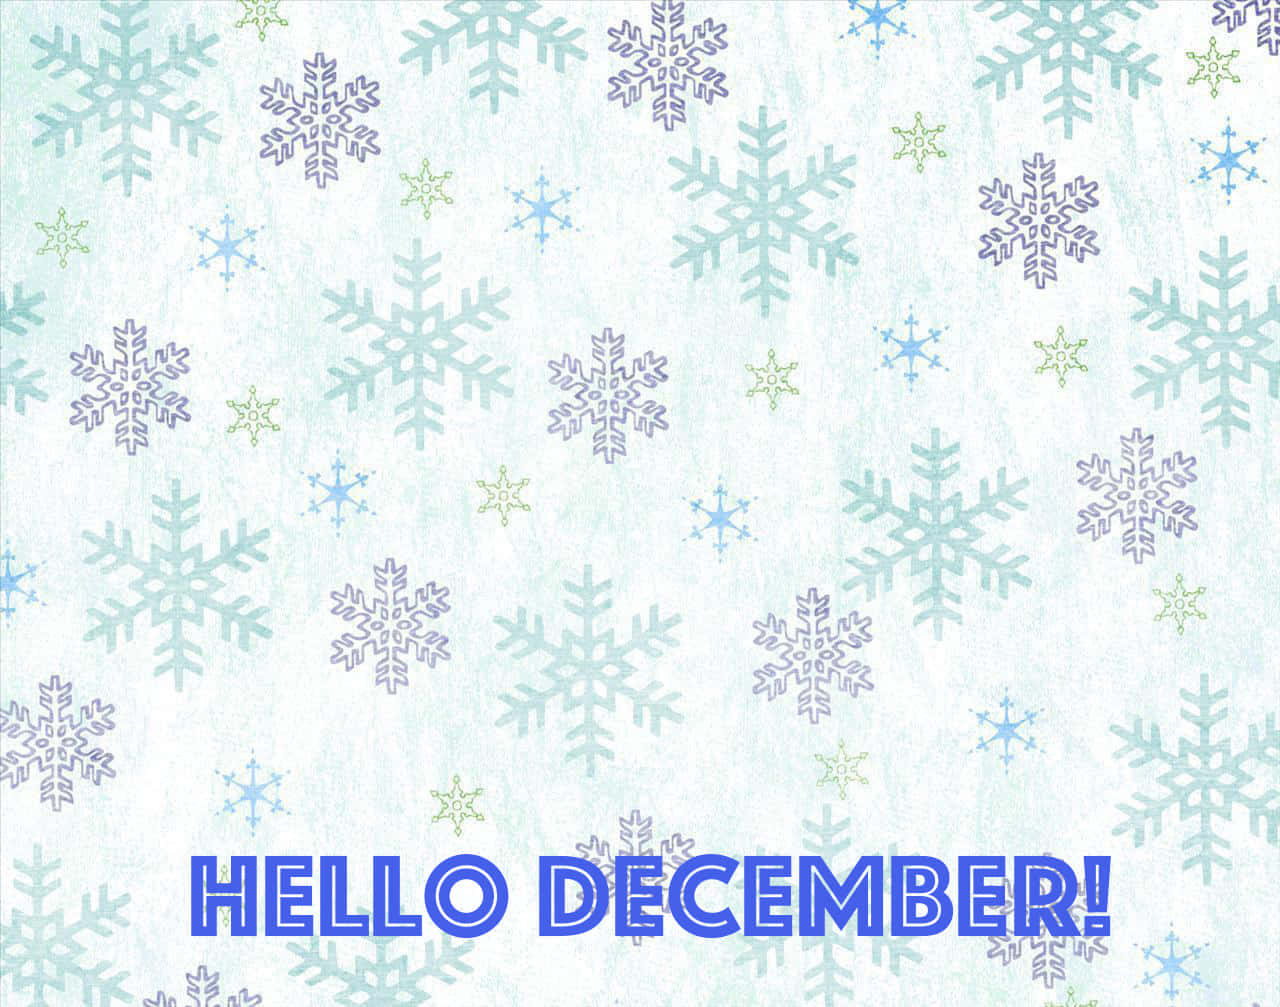 Velkommen december og glæden ved ferien! Wallpaper